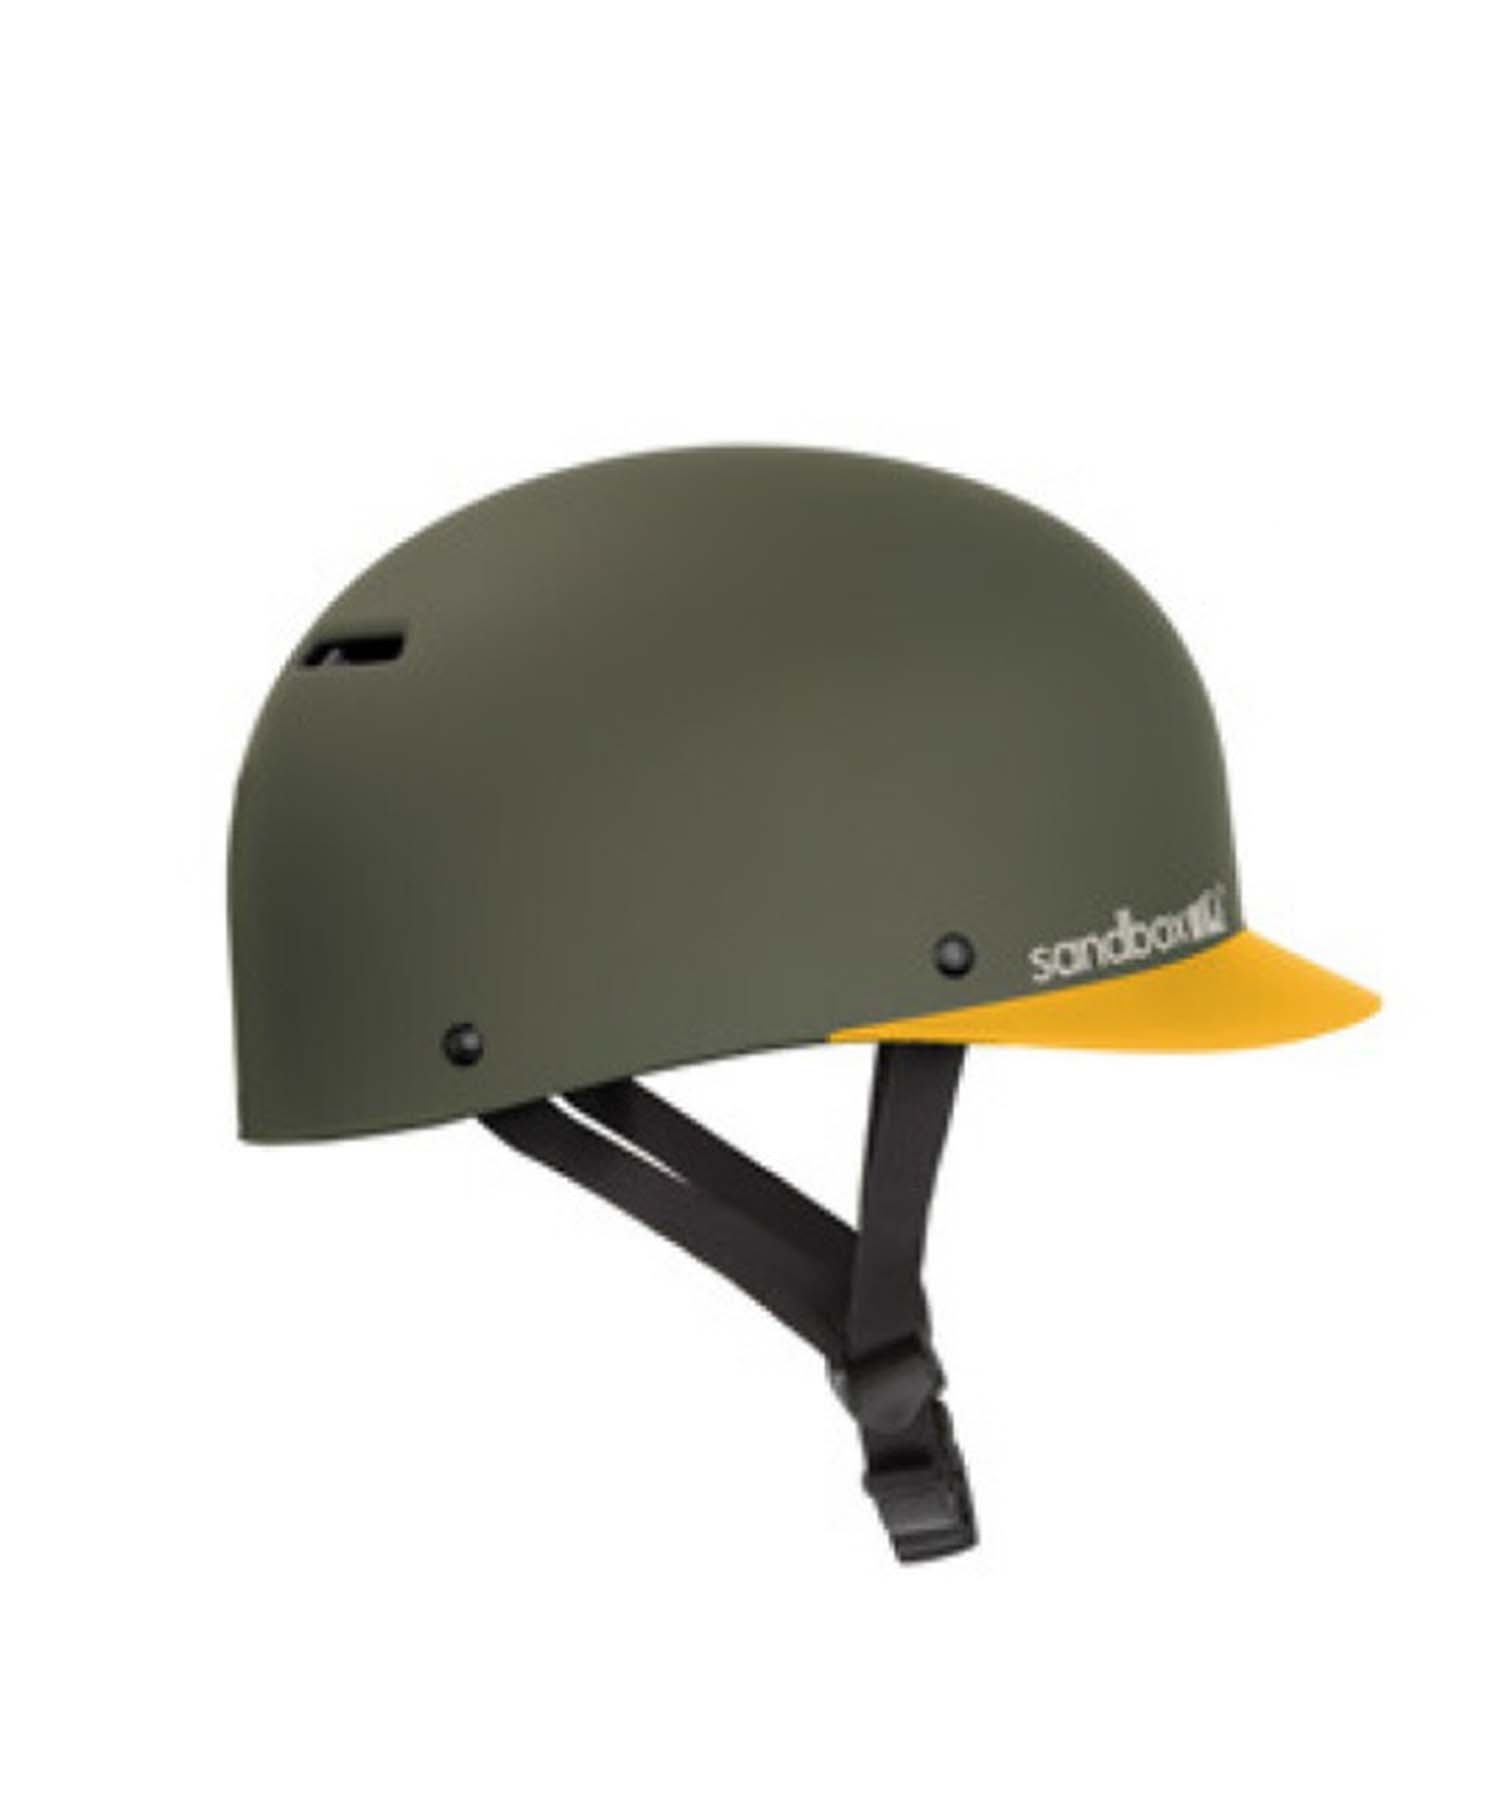 スノーボード ヘルメット SANDBOX サンドボックス CLASSIC-2.0-LOW 